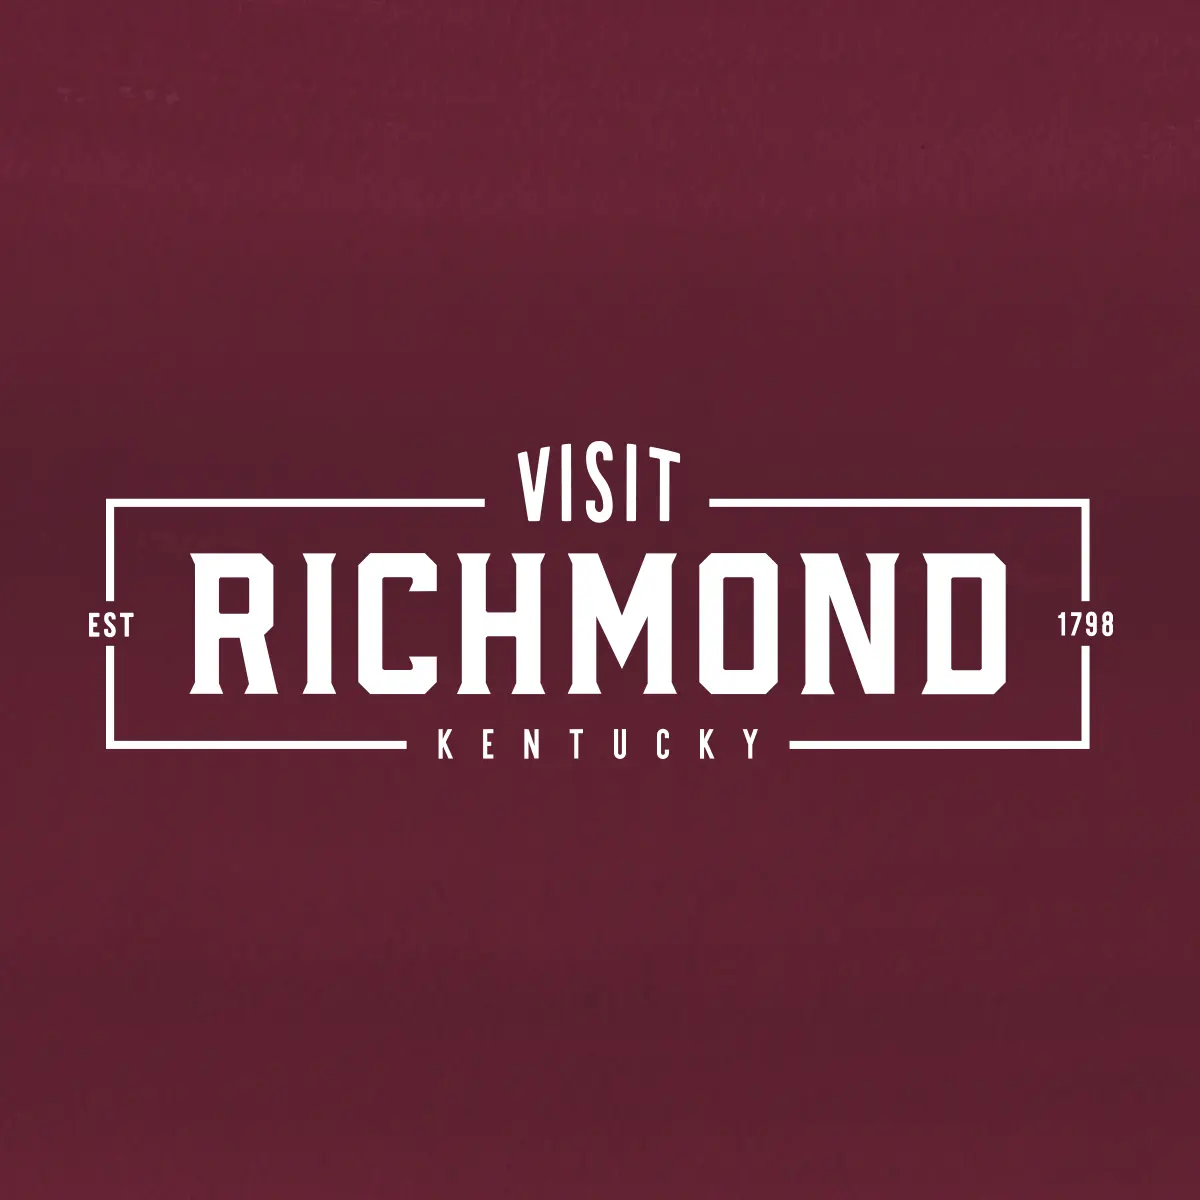 Logo Design - Richmond Tourism Commission